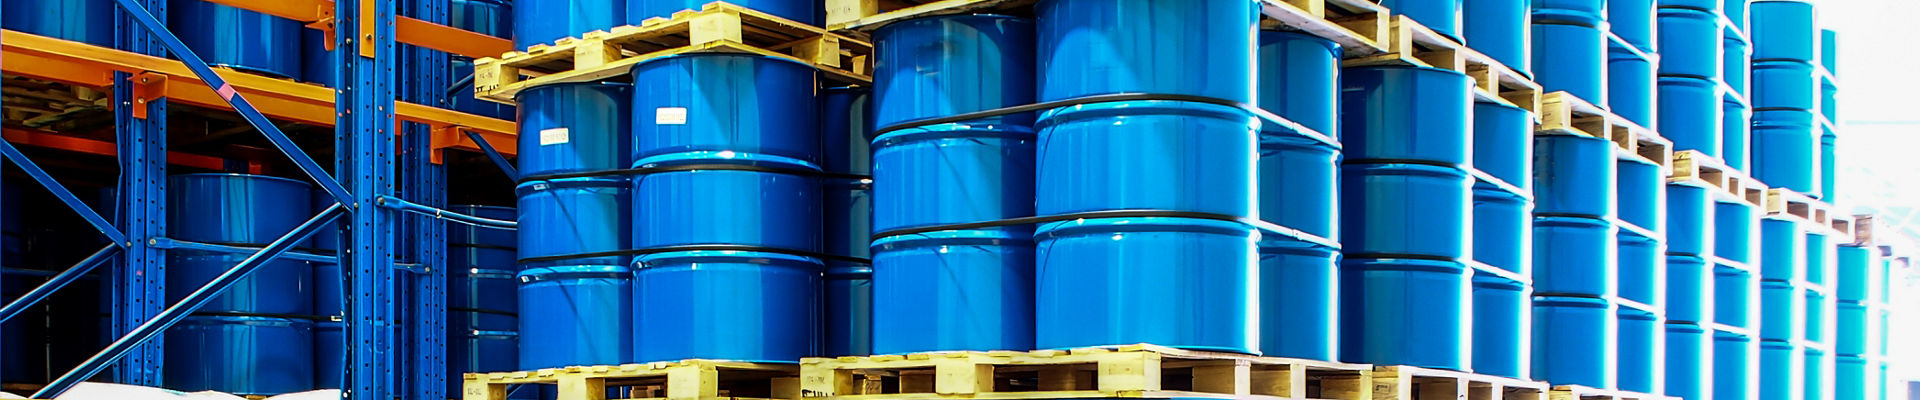 tambores industriales azules en los estantes del depósito